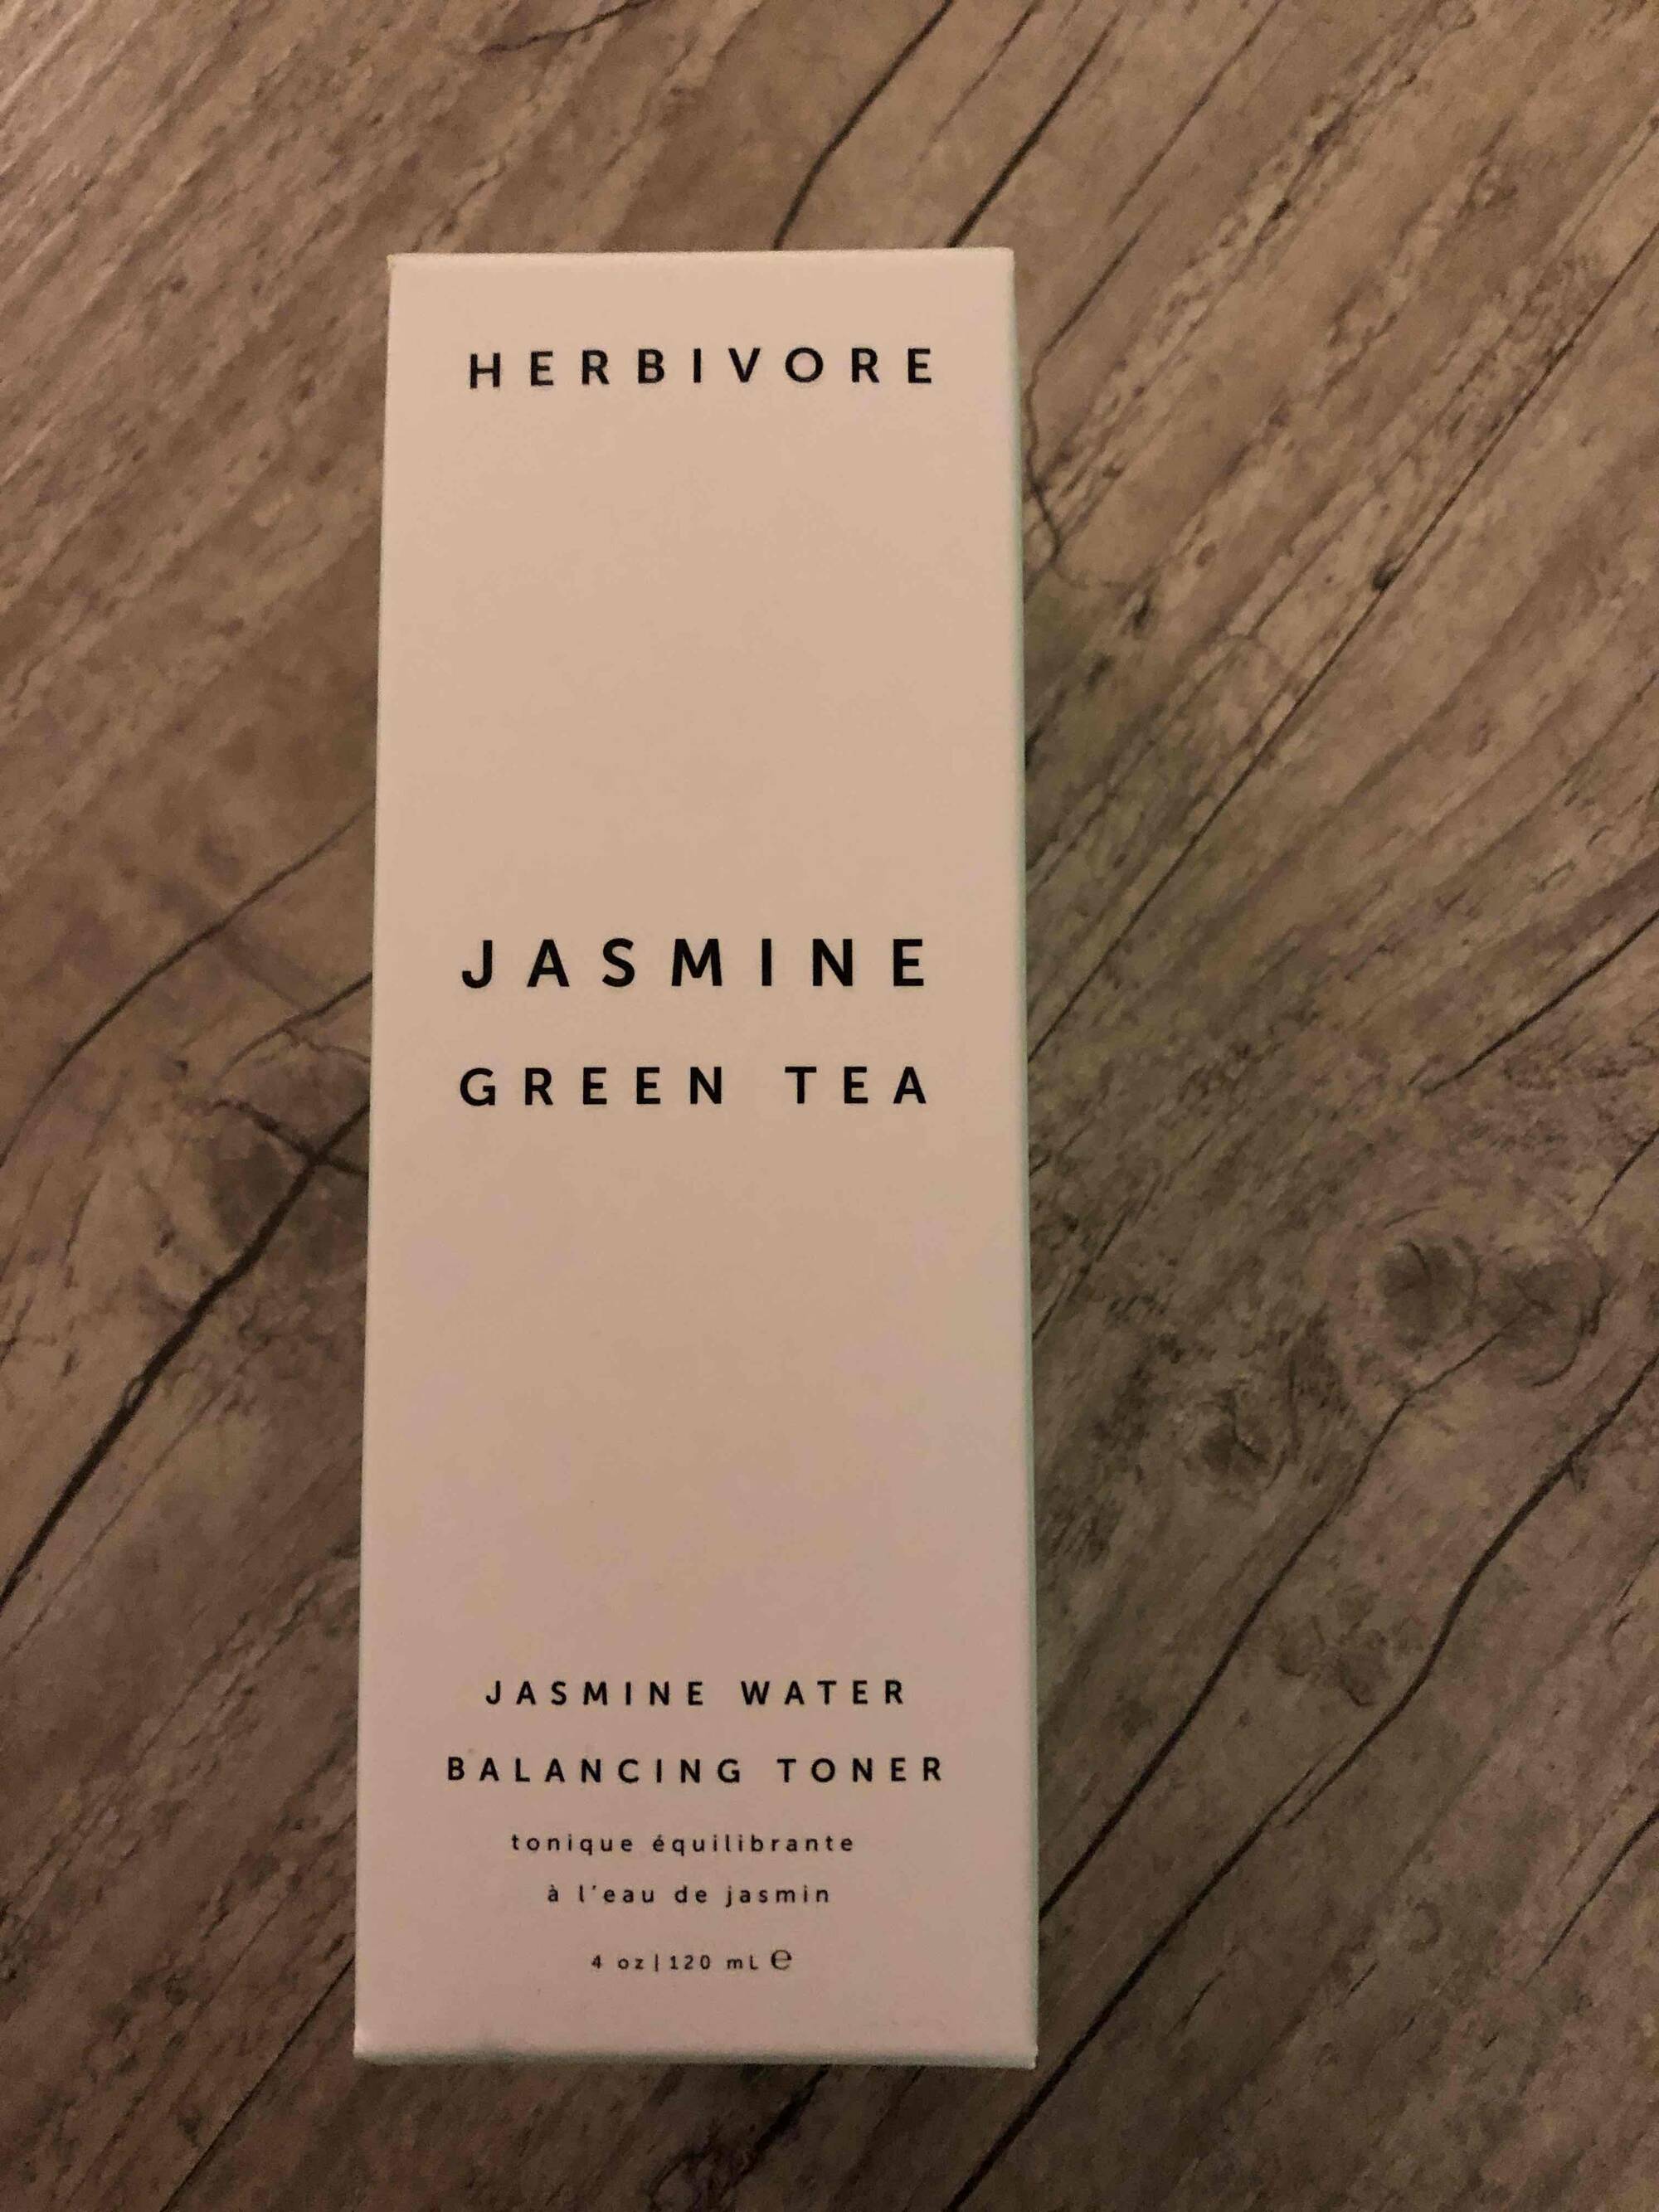 HERBIVORE - Jasmine green tea - Tonique équilibrante à l'eau de jasmin